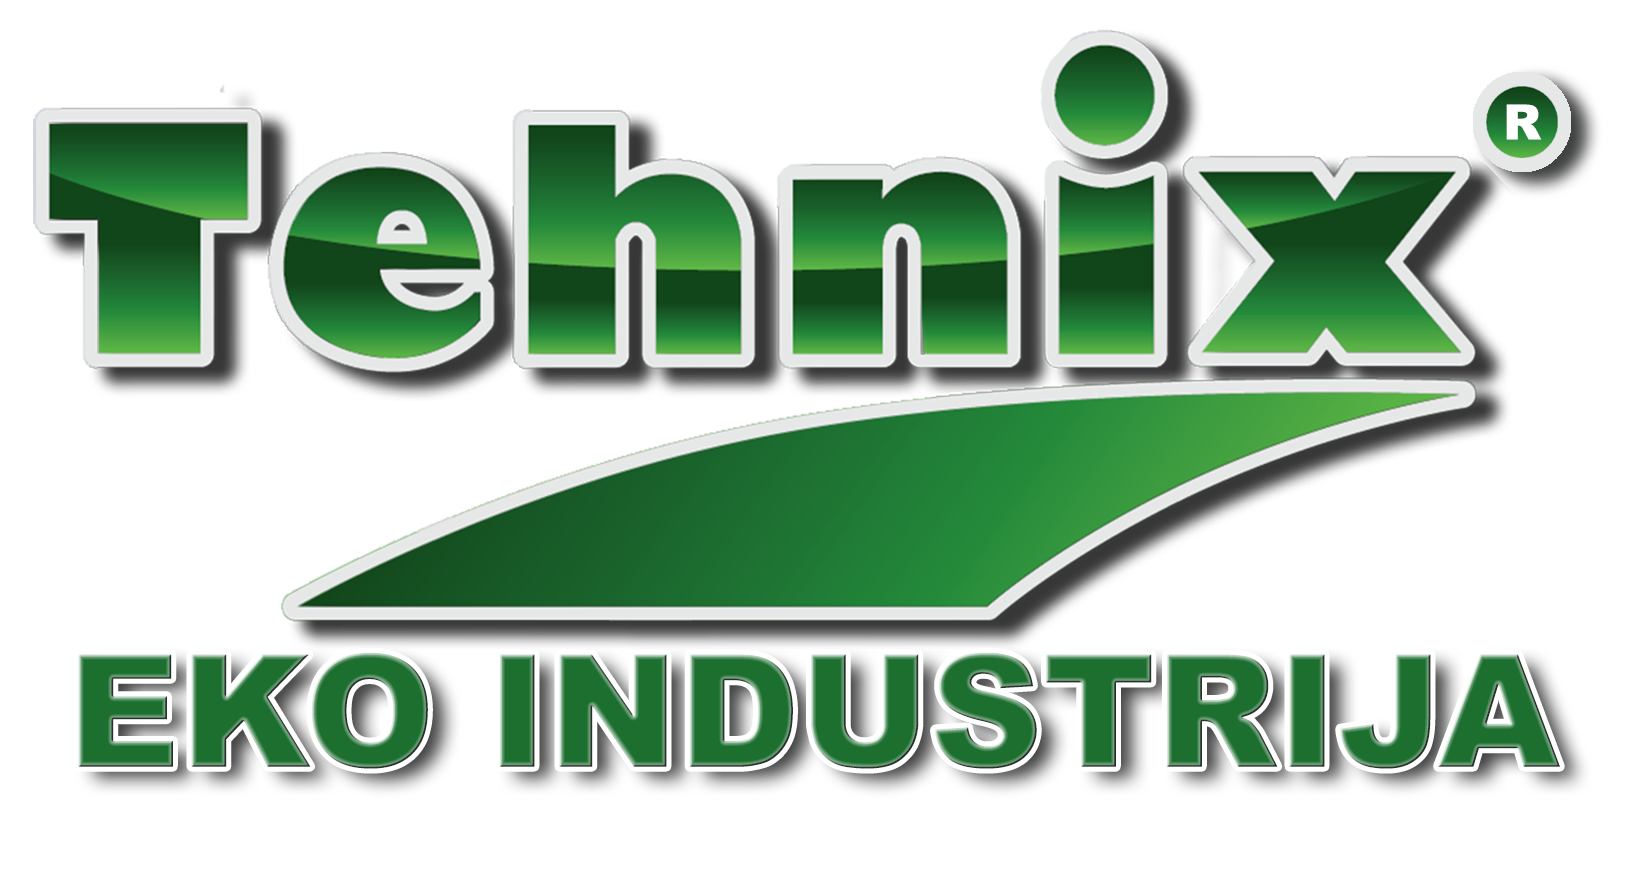 Tvrtka Tehnix-d.o.o. uspješno je provela projekt Sunčana elektrana Tehnix